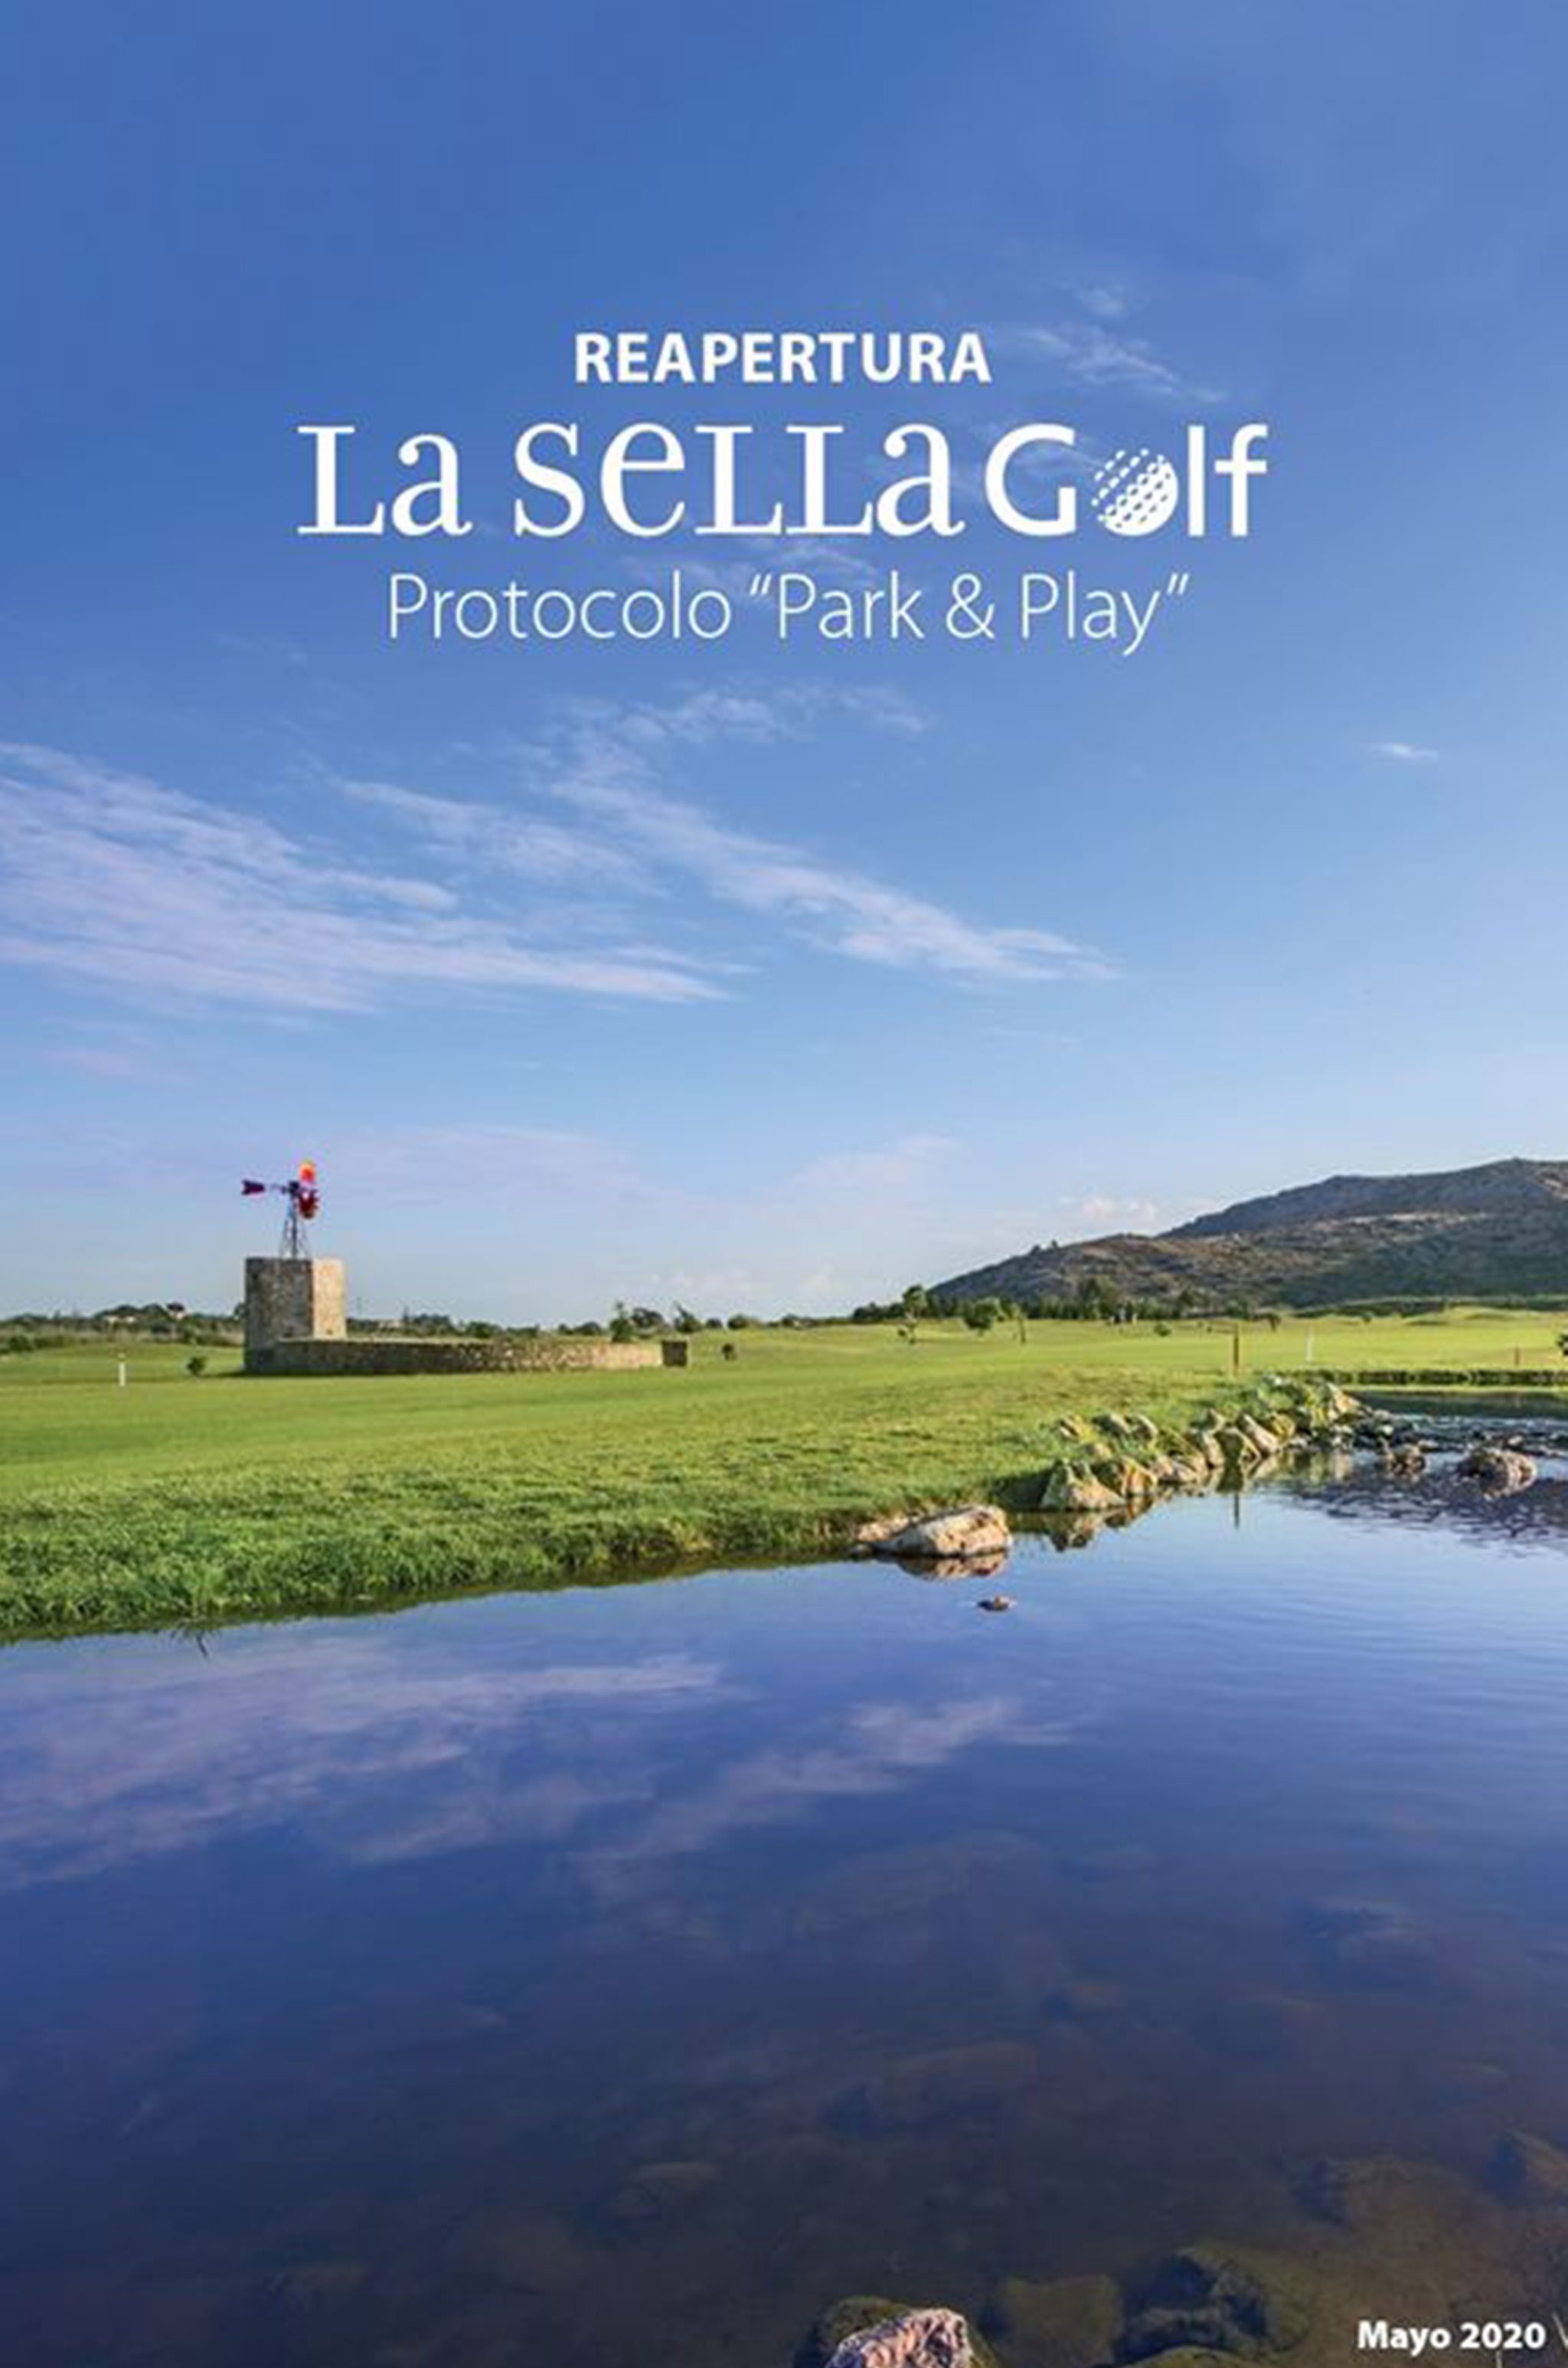 Protocolo para una práctica del golf segura, consultable con detalle en las RRSS de La Sella Golf